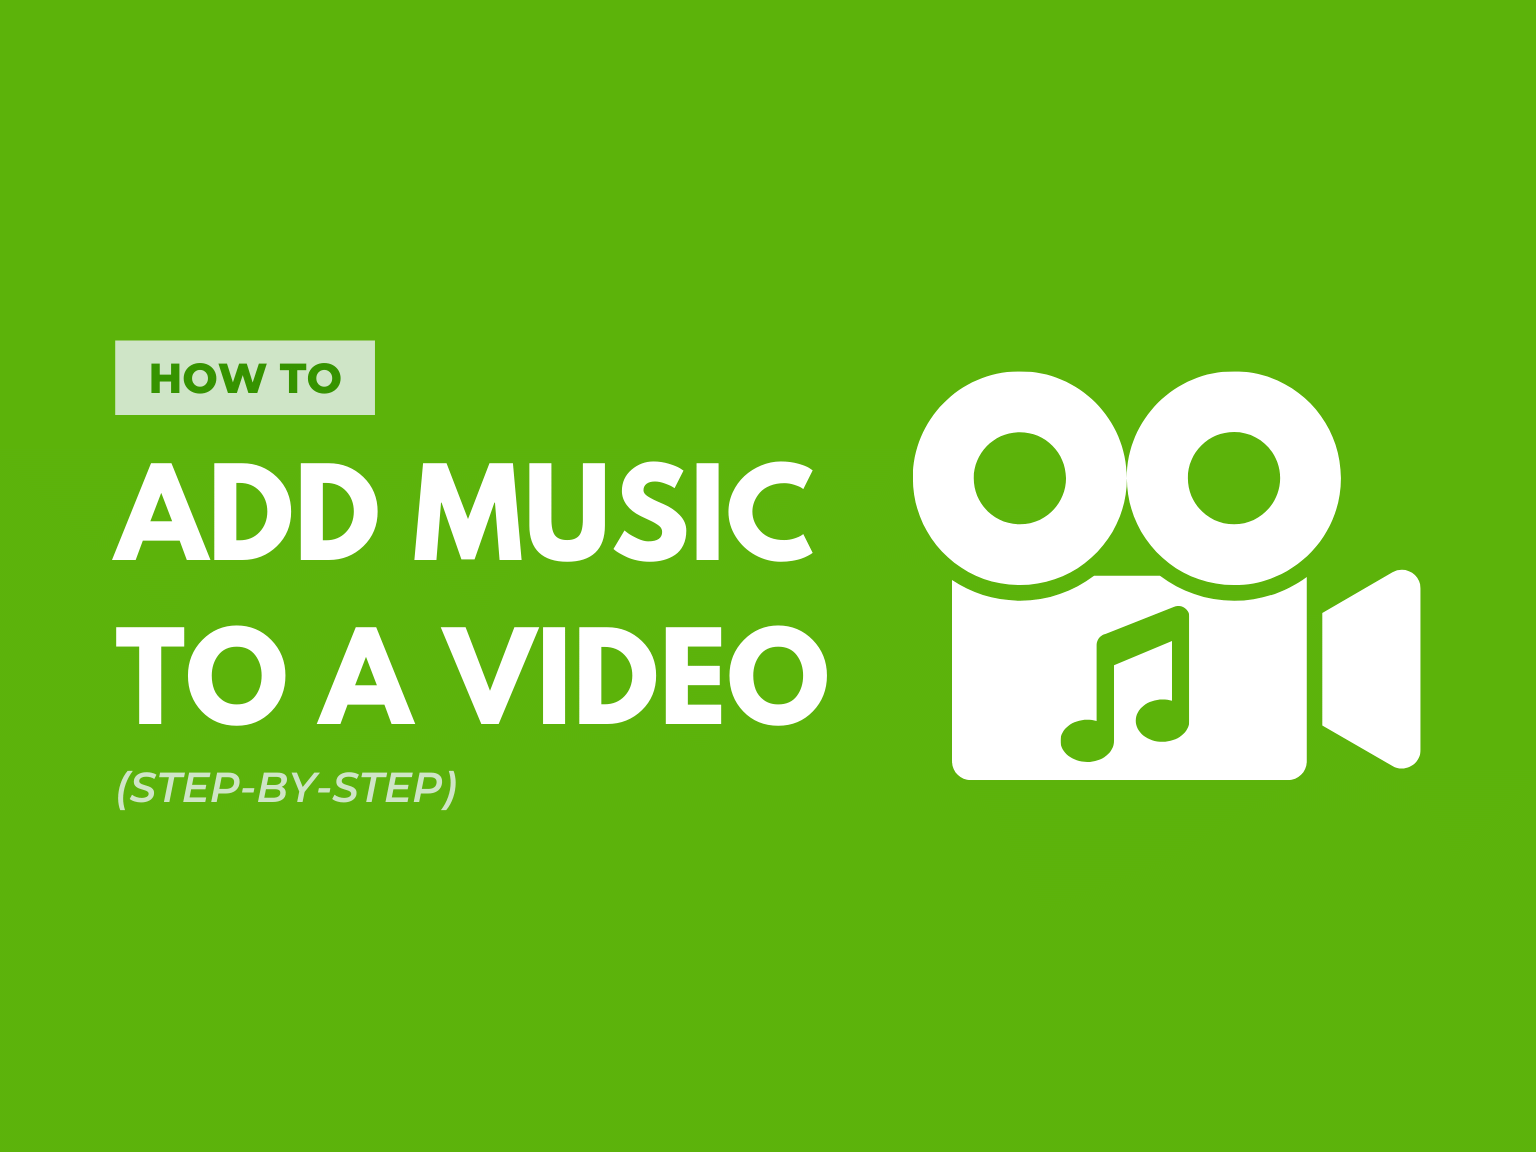 Bạn đang tìm cách thêm nhạc vào video một cách đơn giản và nhanh chóng? Hãy tìm hiểu cách làm này để tạo ra một video thực sự sống động và chân thật. Bạn sẽ cảm nhận được sự hài lòng và thỏa mãn khi tạo ra một sản phẩm video tuyệt vời cho riêng mình.